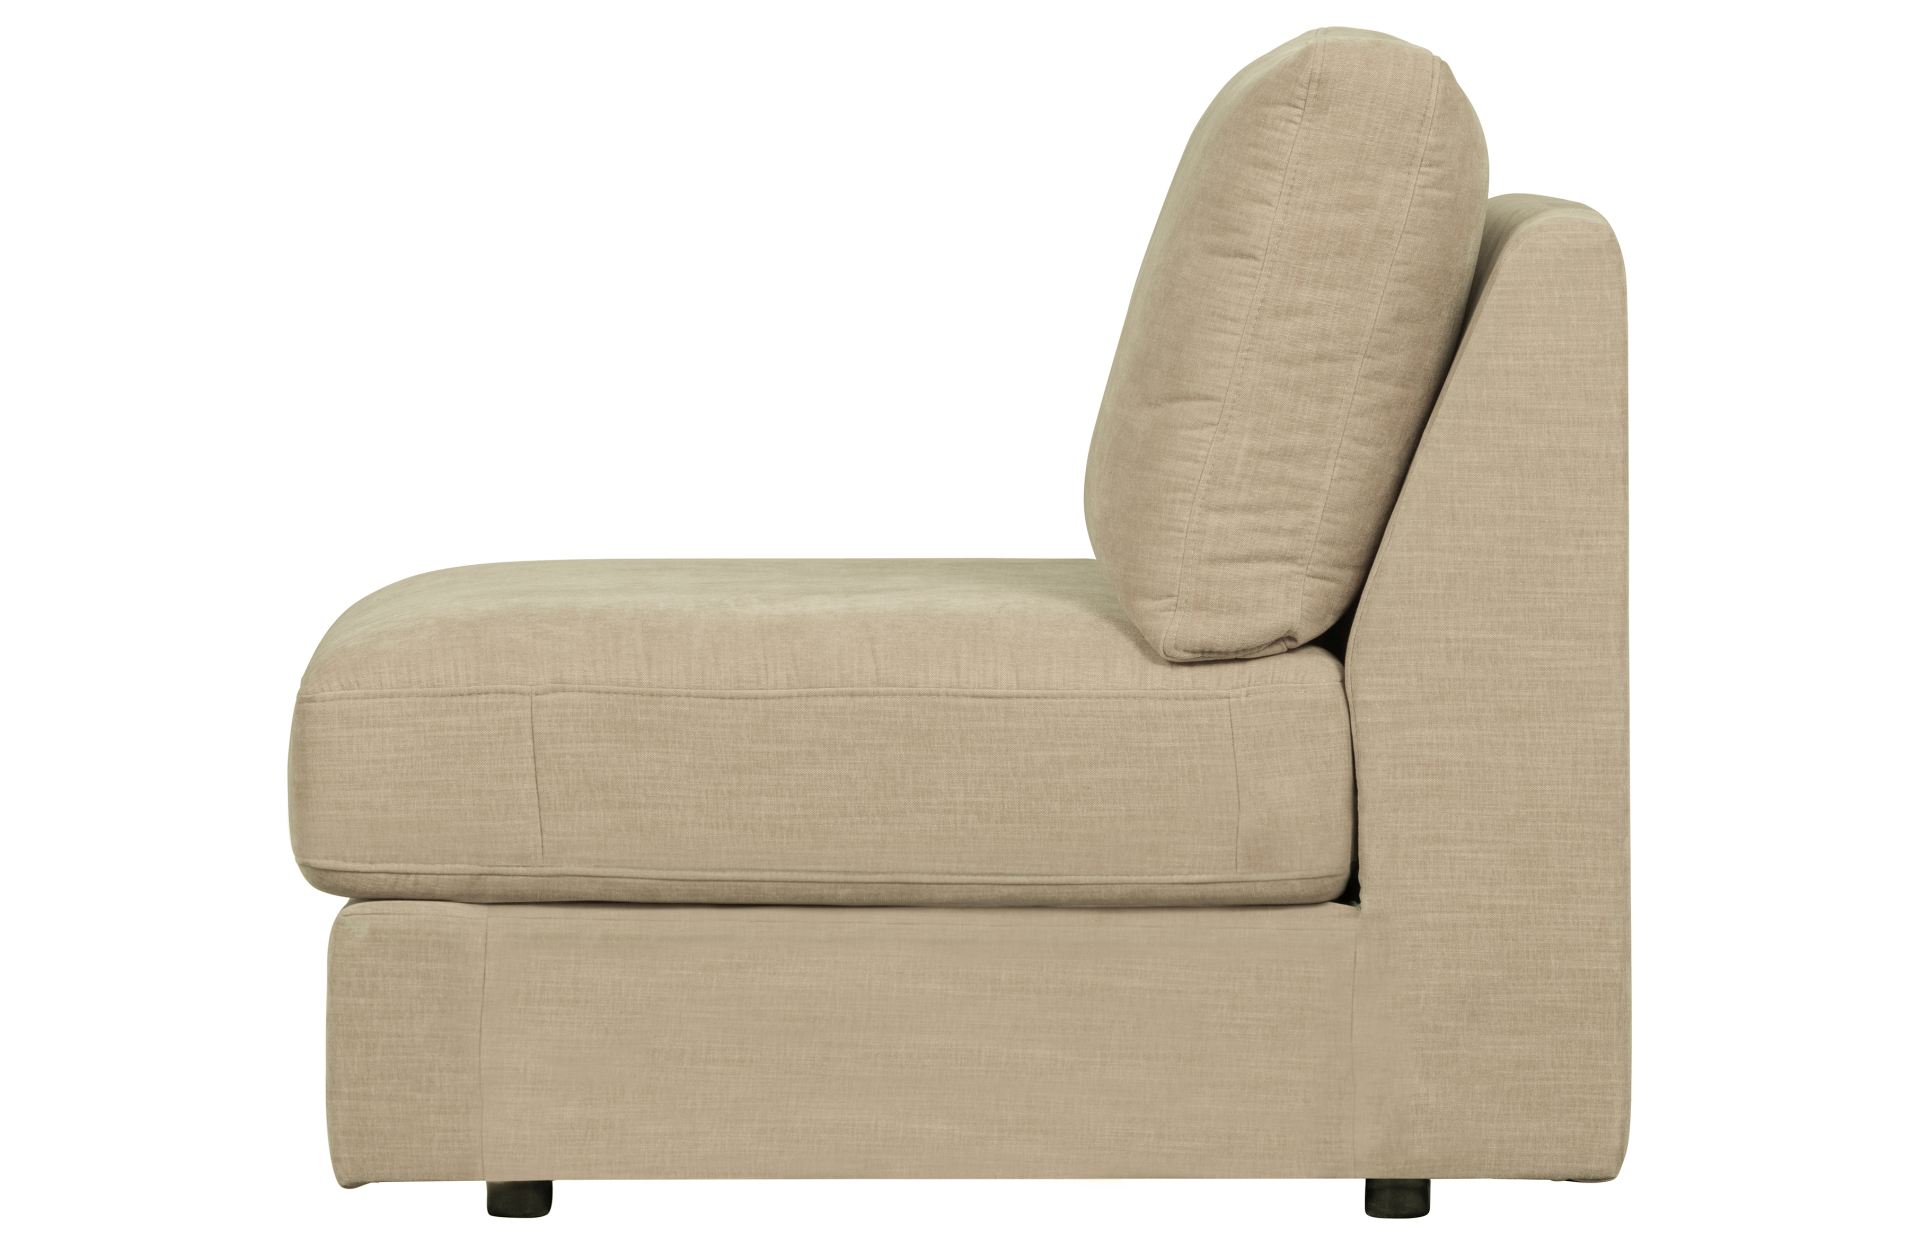 Das Modulsofa Family überzeugt mit seinem modernen Design. Das Seat Element wurde aus Gewebe-Stoff gefertigt, welcher einen einen Sand Farbton besitzen. Das Gestell ist aus Metall und hat eine schwarze Farbe. Das Element hat eine Sitzhöhe von 44 cm.